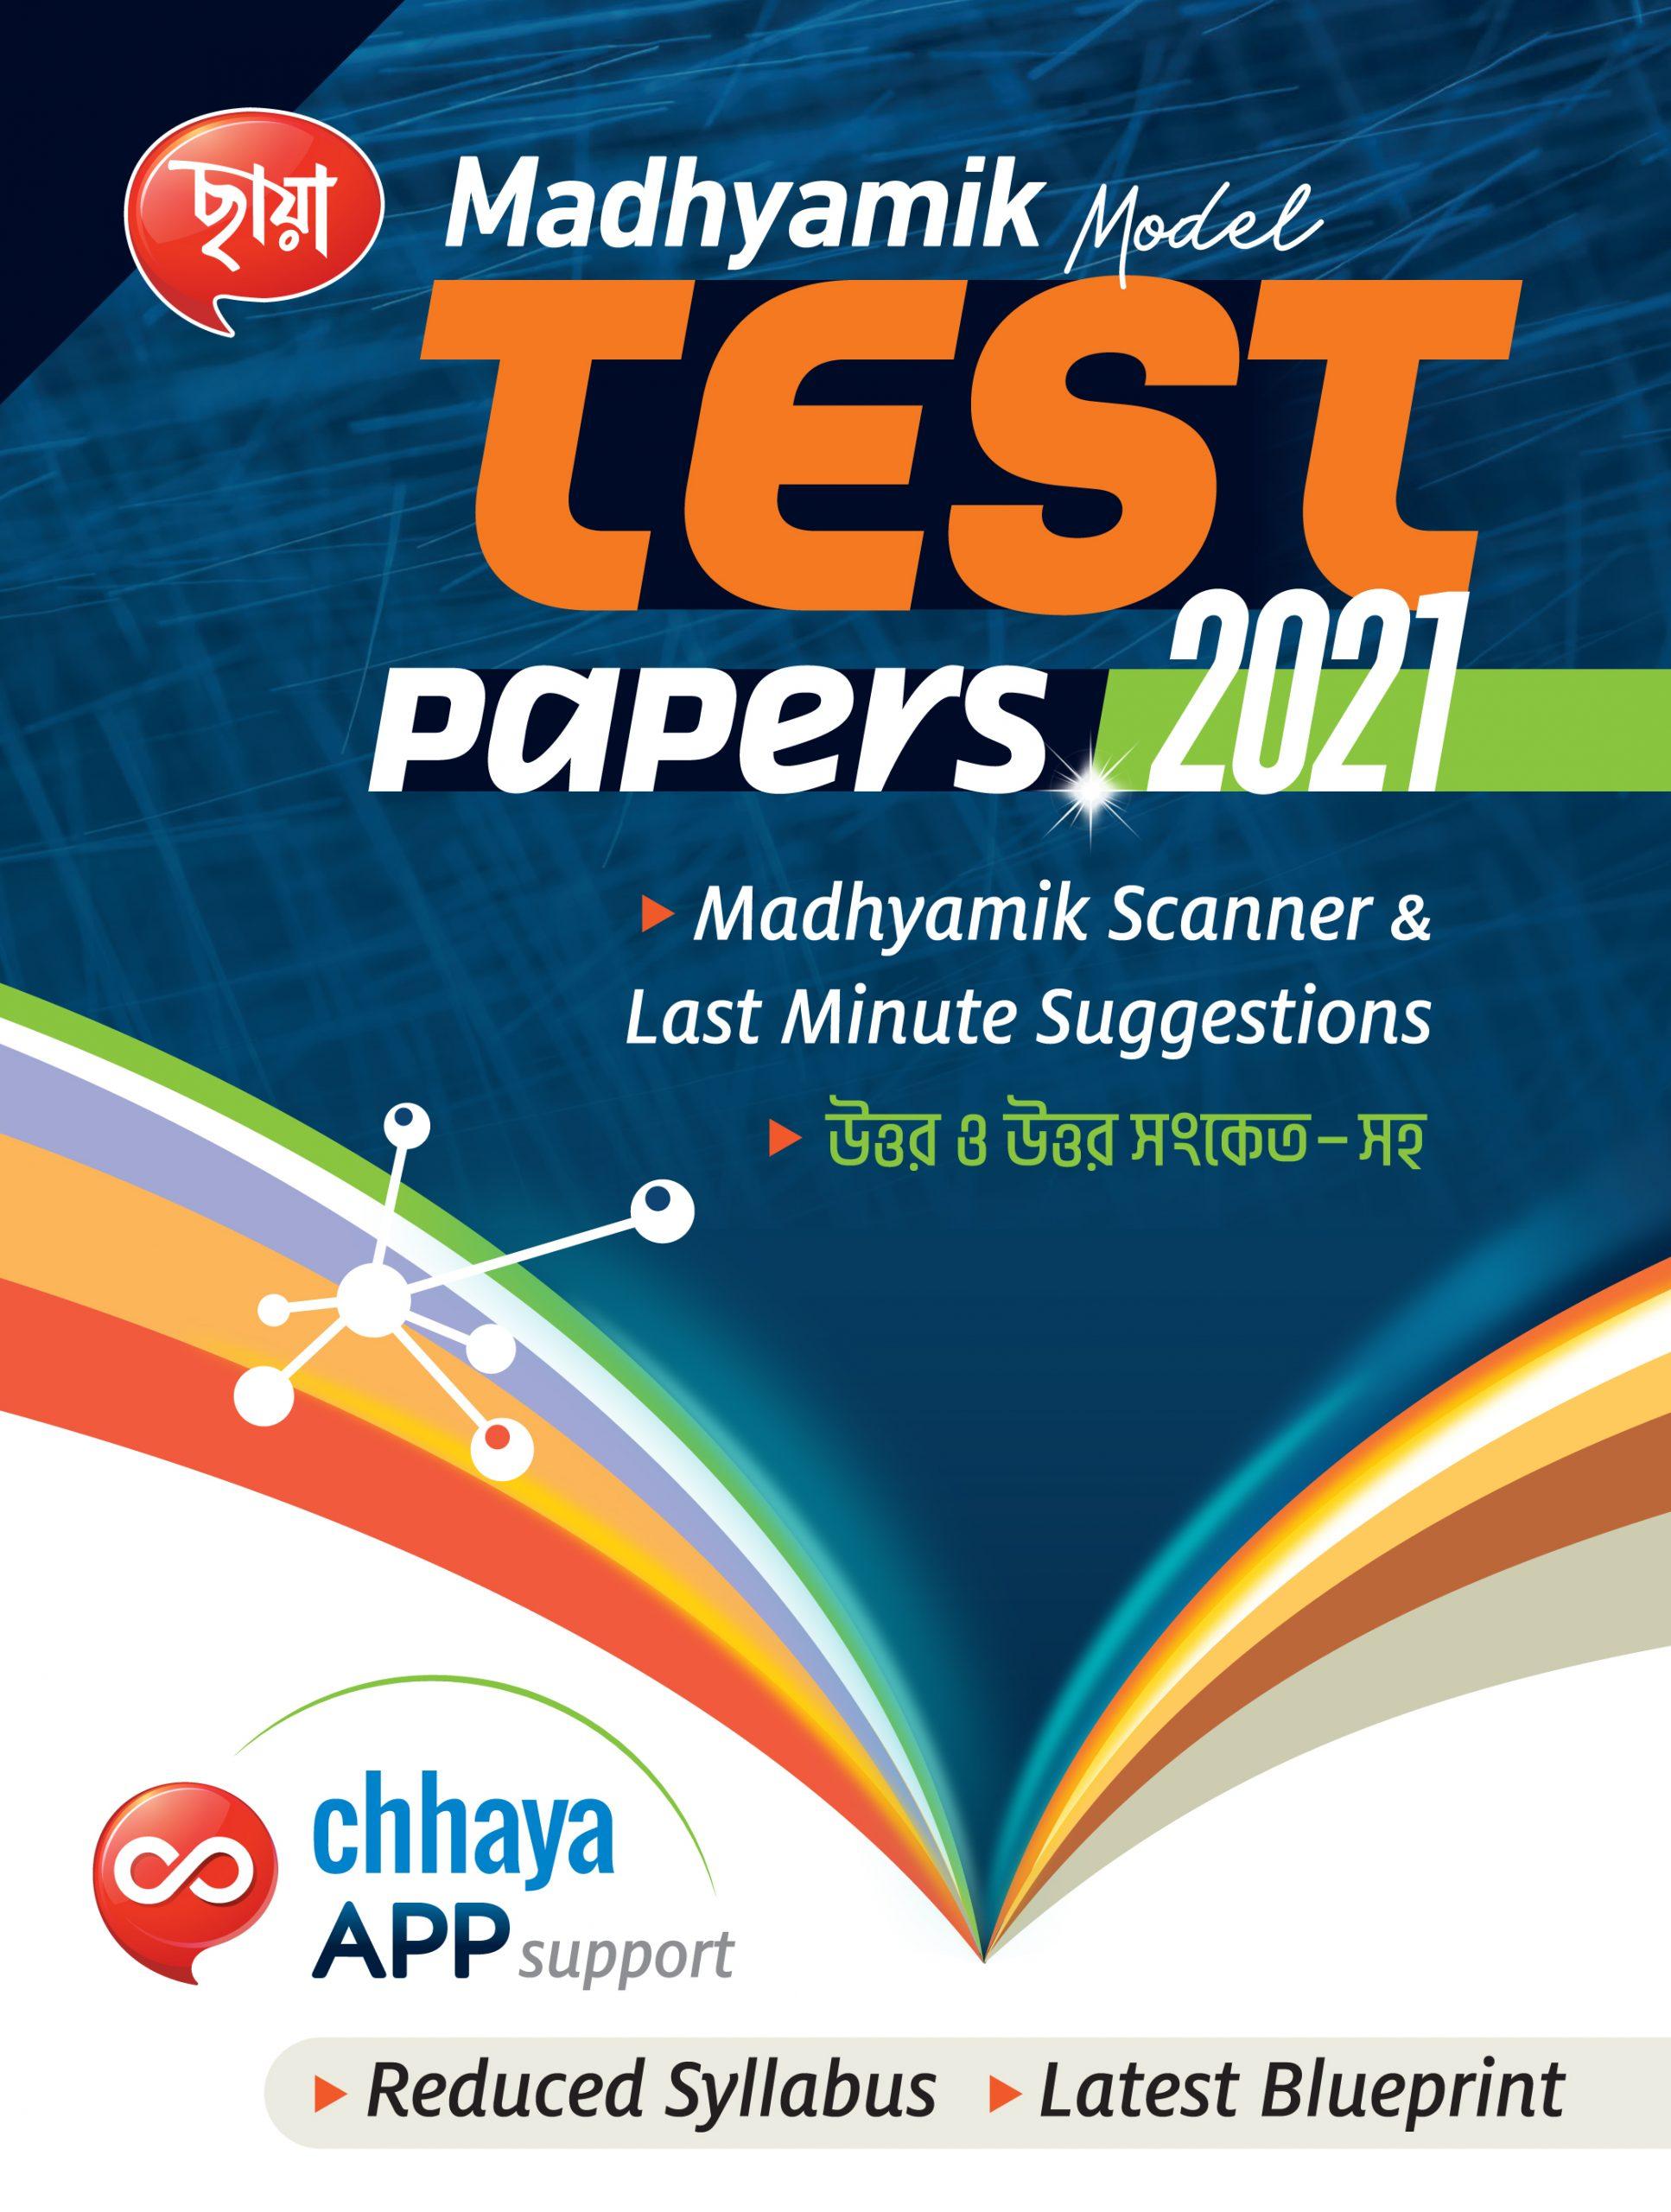 Madhyamik Model Test Paper (2021)